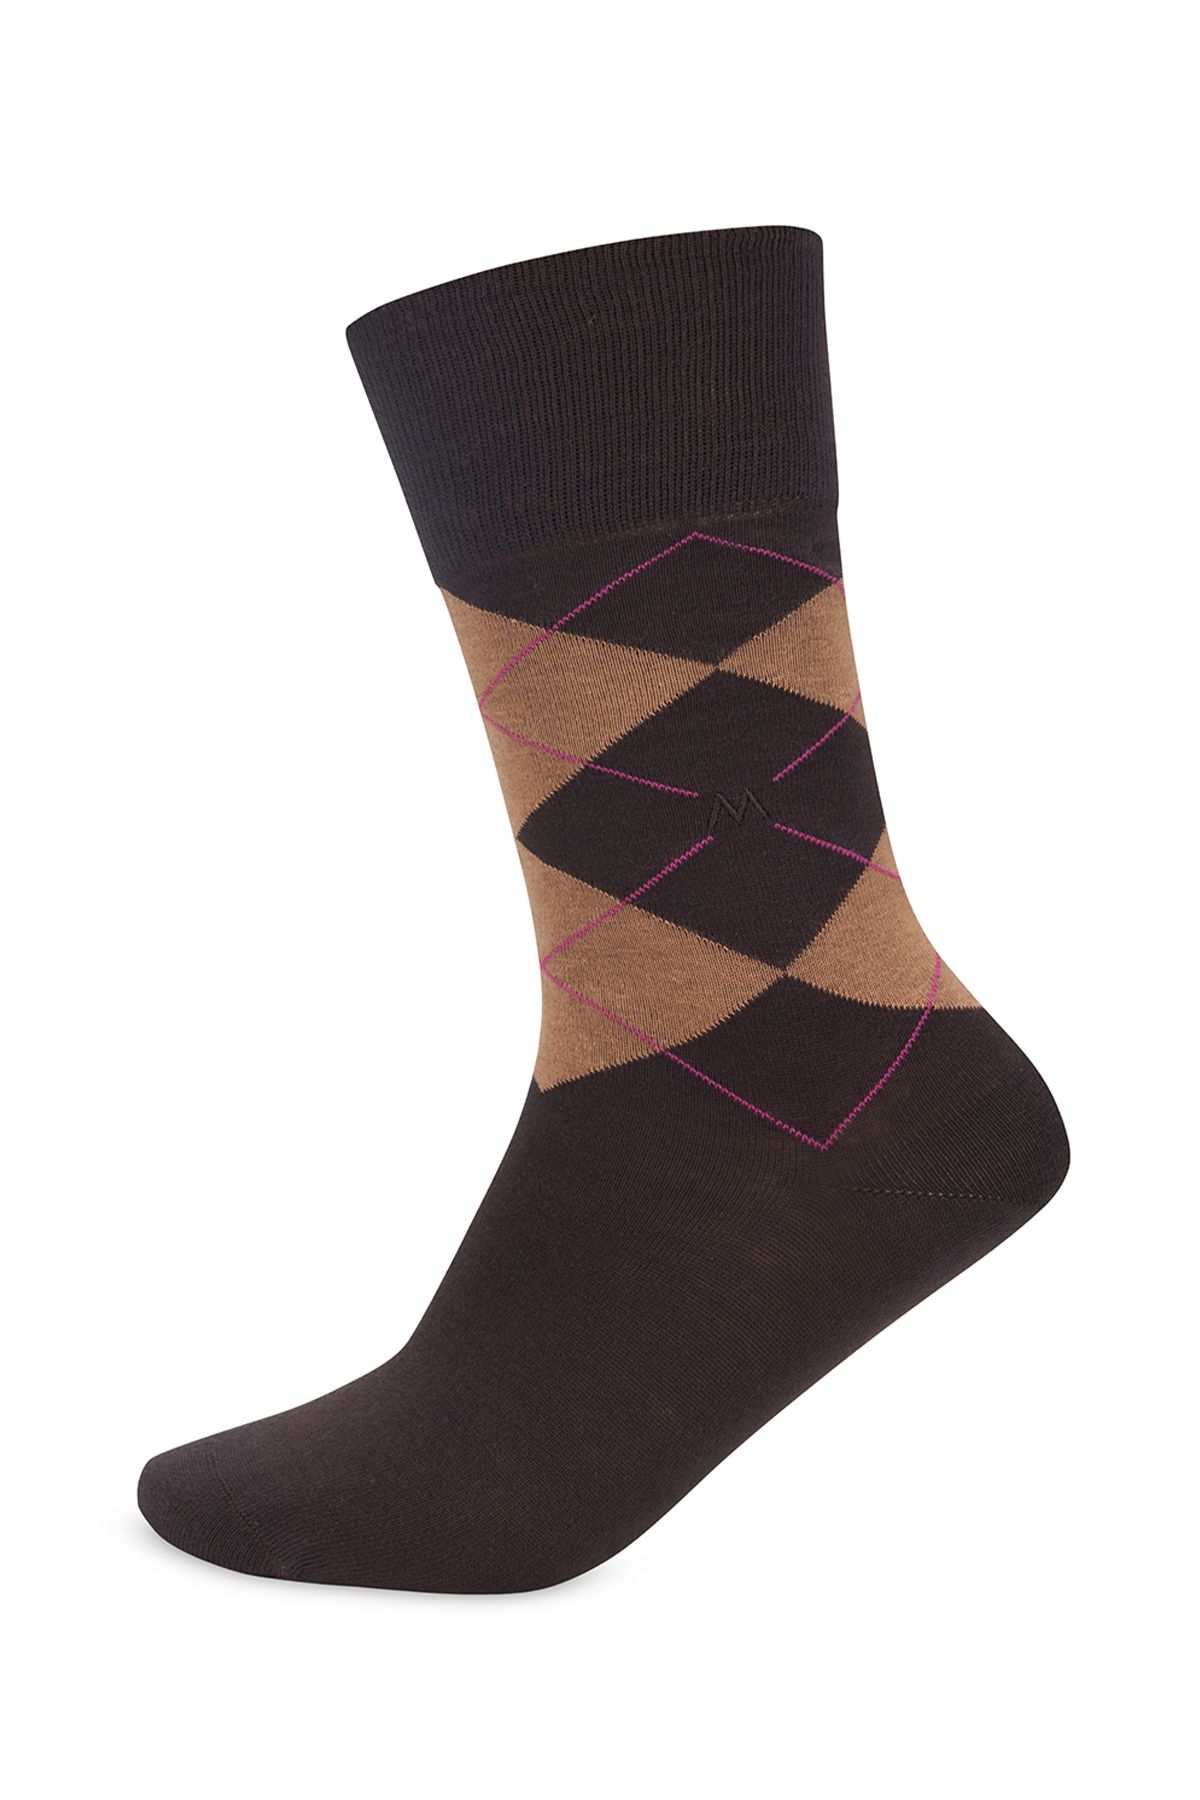 Hemington Baklava Desenli Kahverengi Pamuk Çorap